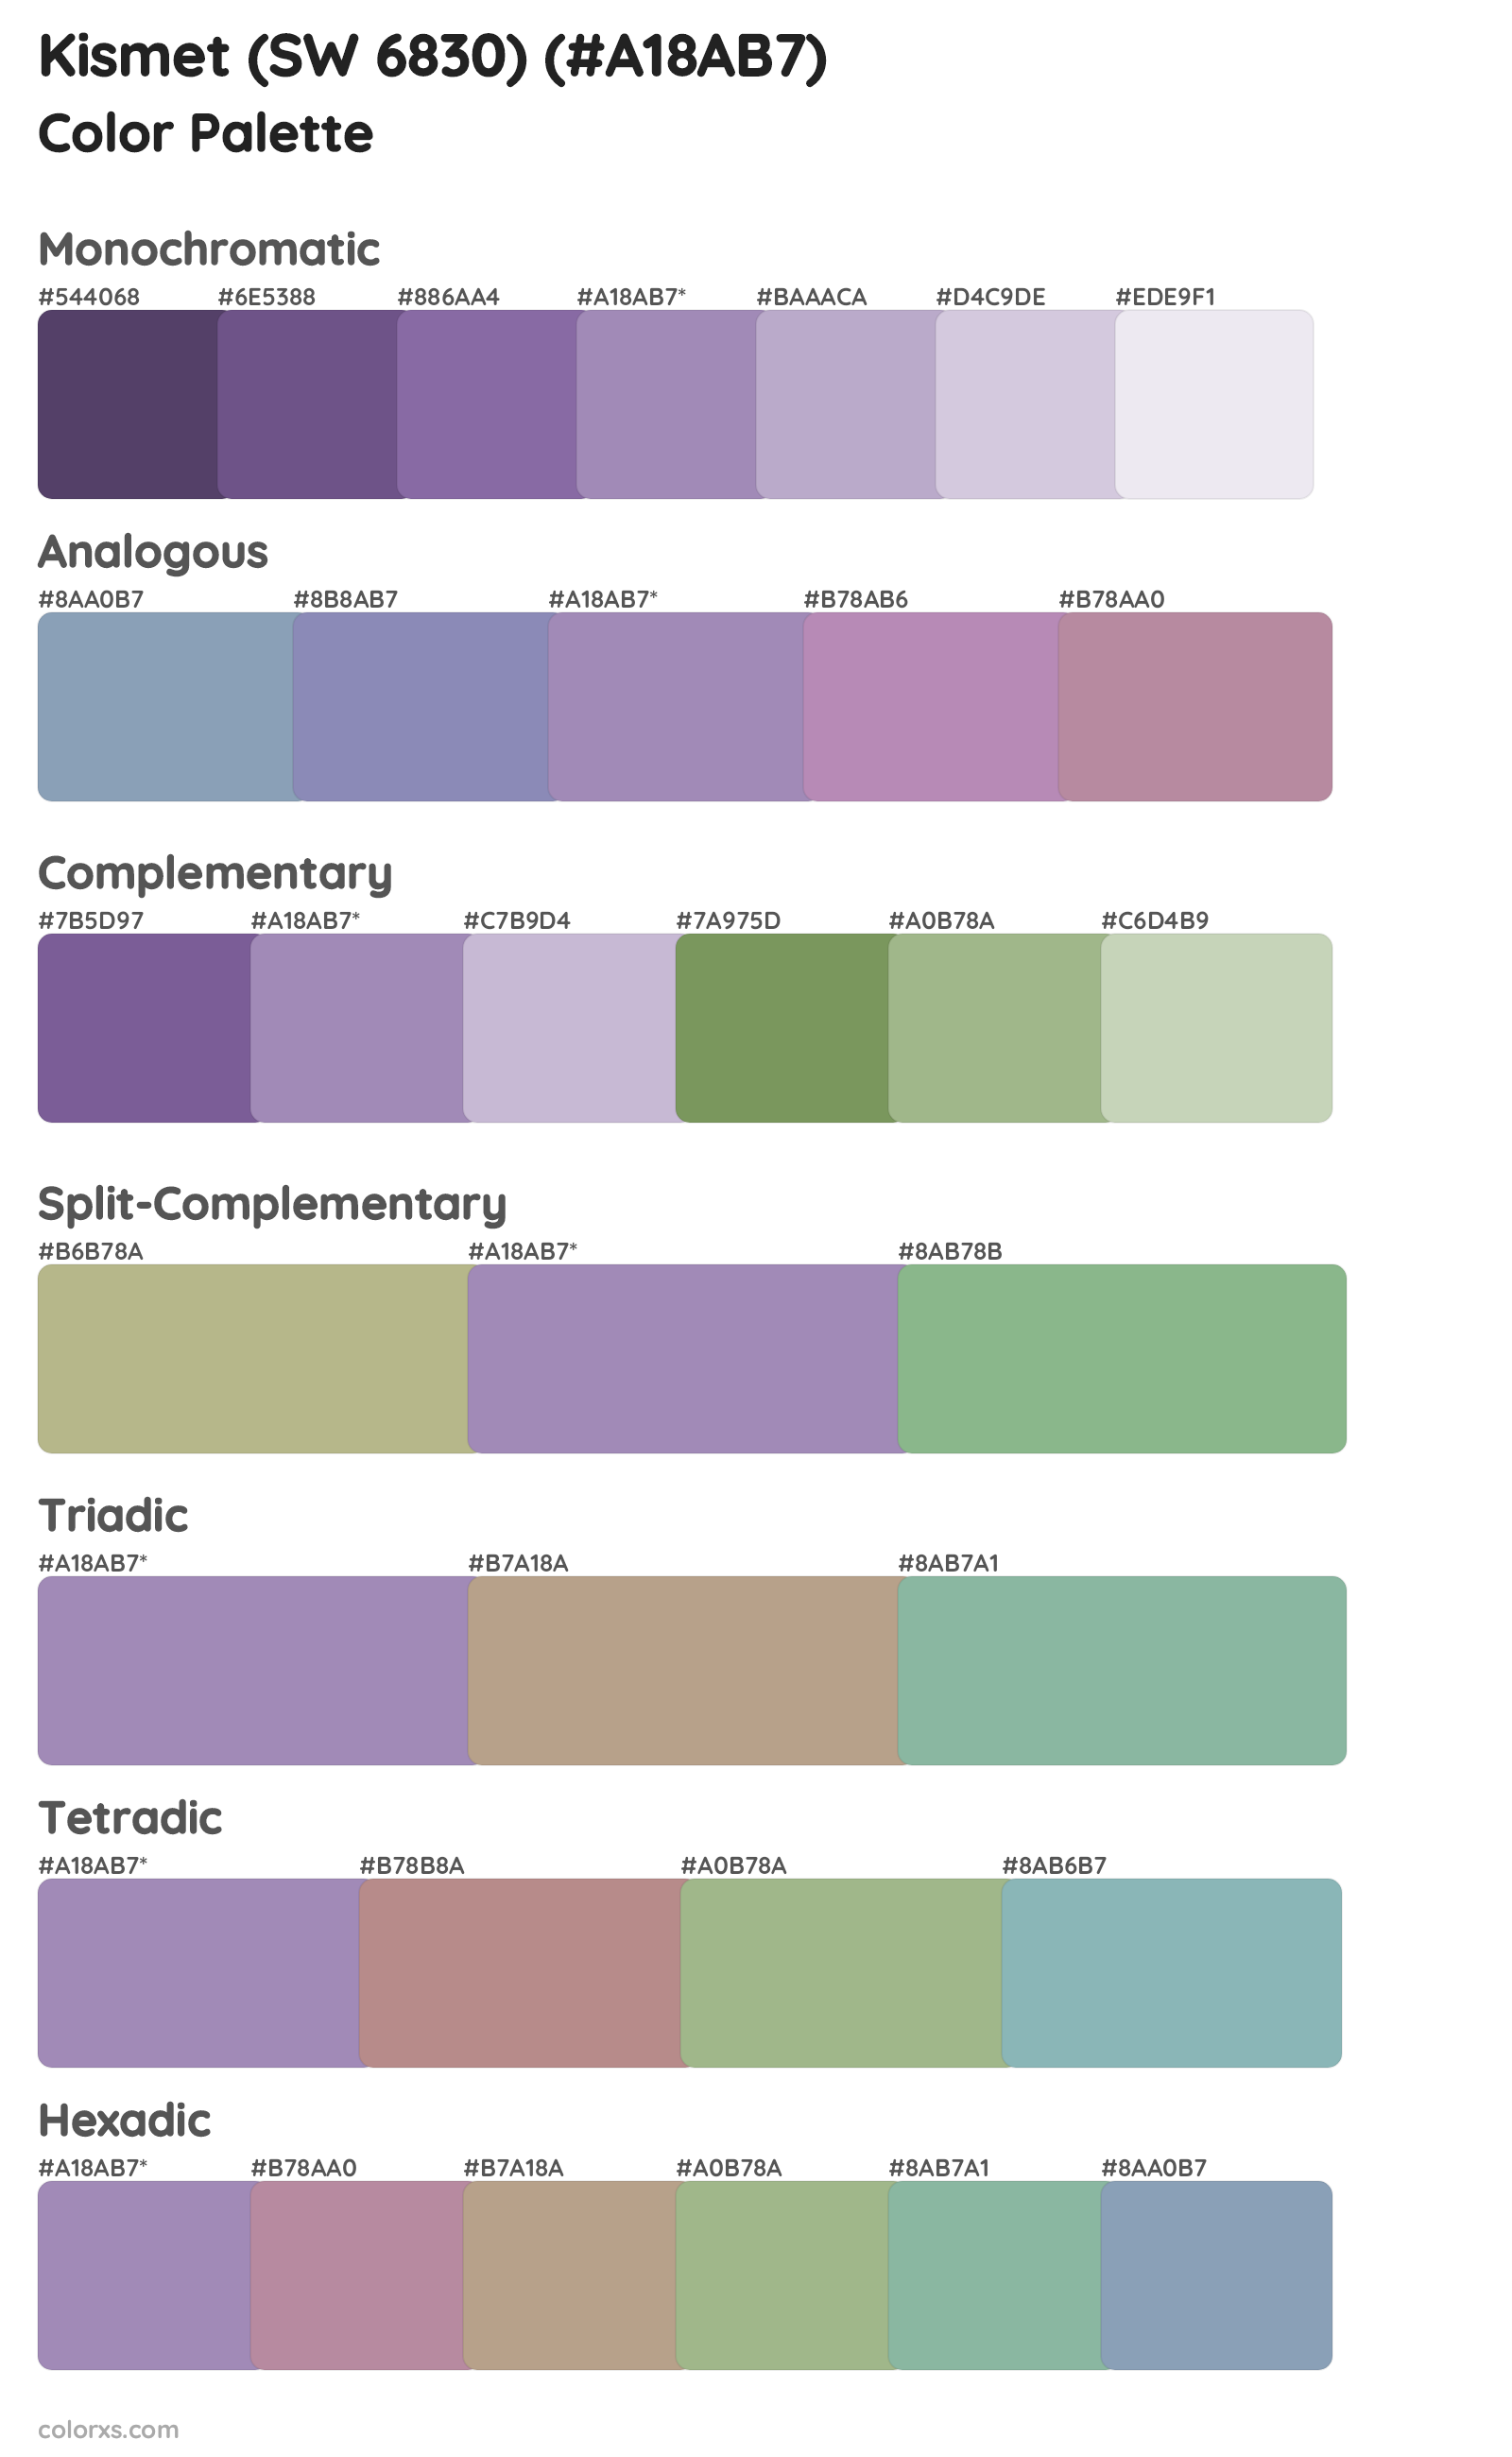 Kismet (SW 6830) Color Scheme Palettes